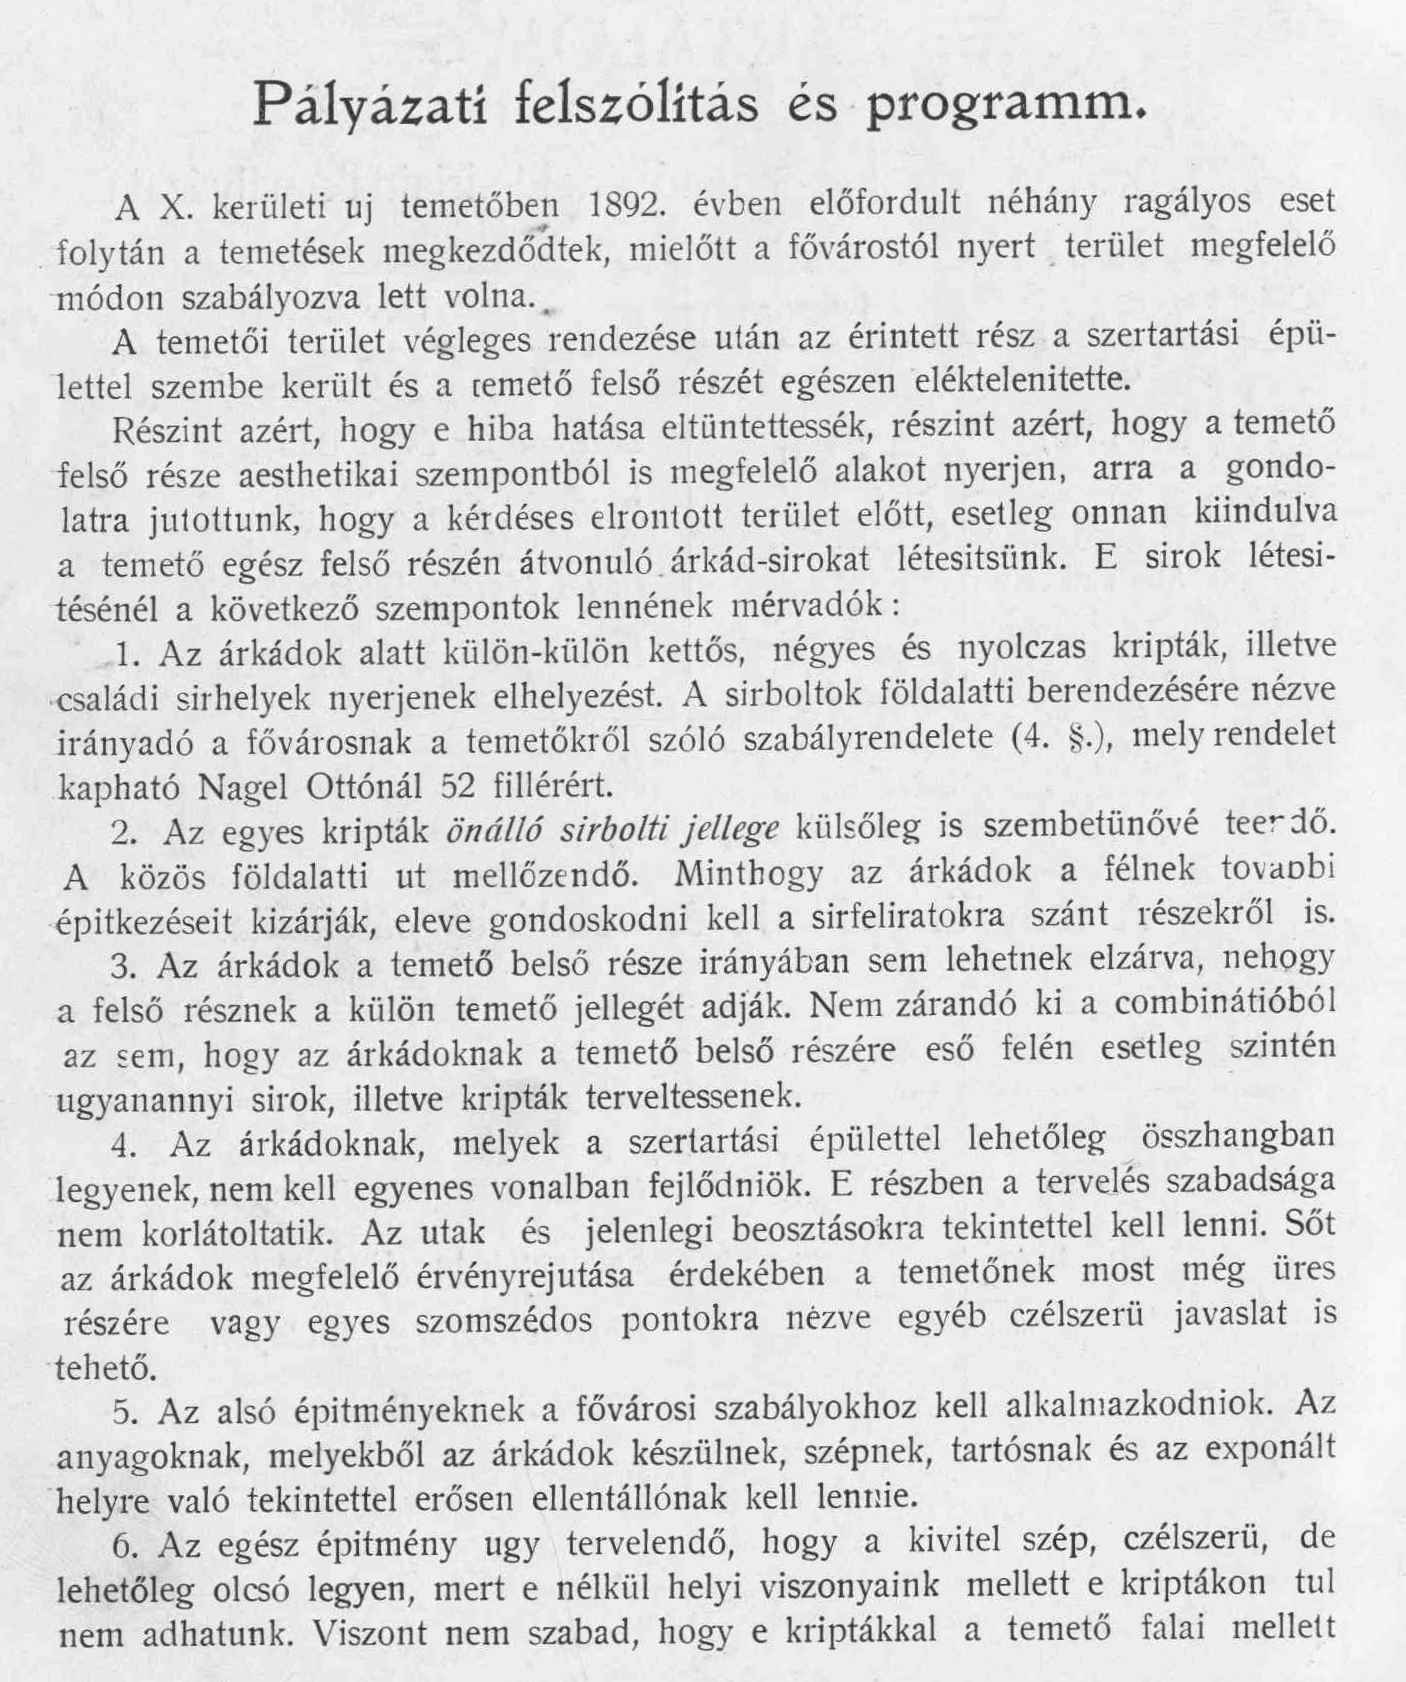 Magyar Pályázatok, 1903/12. 2. p.